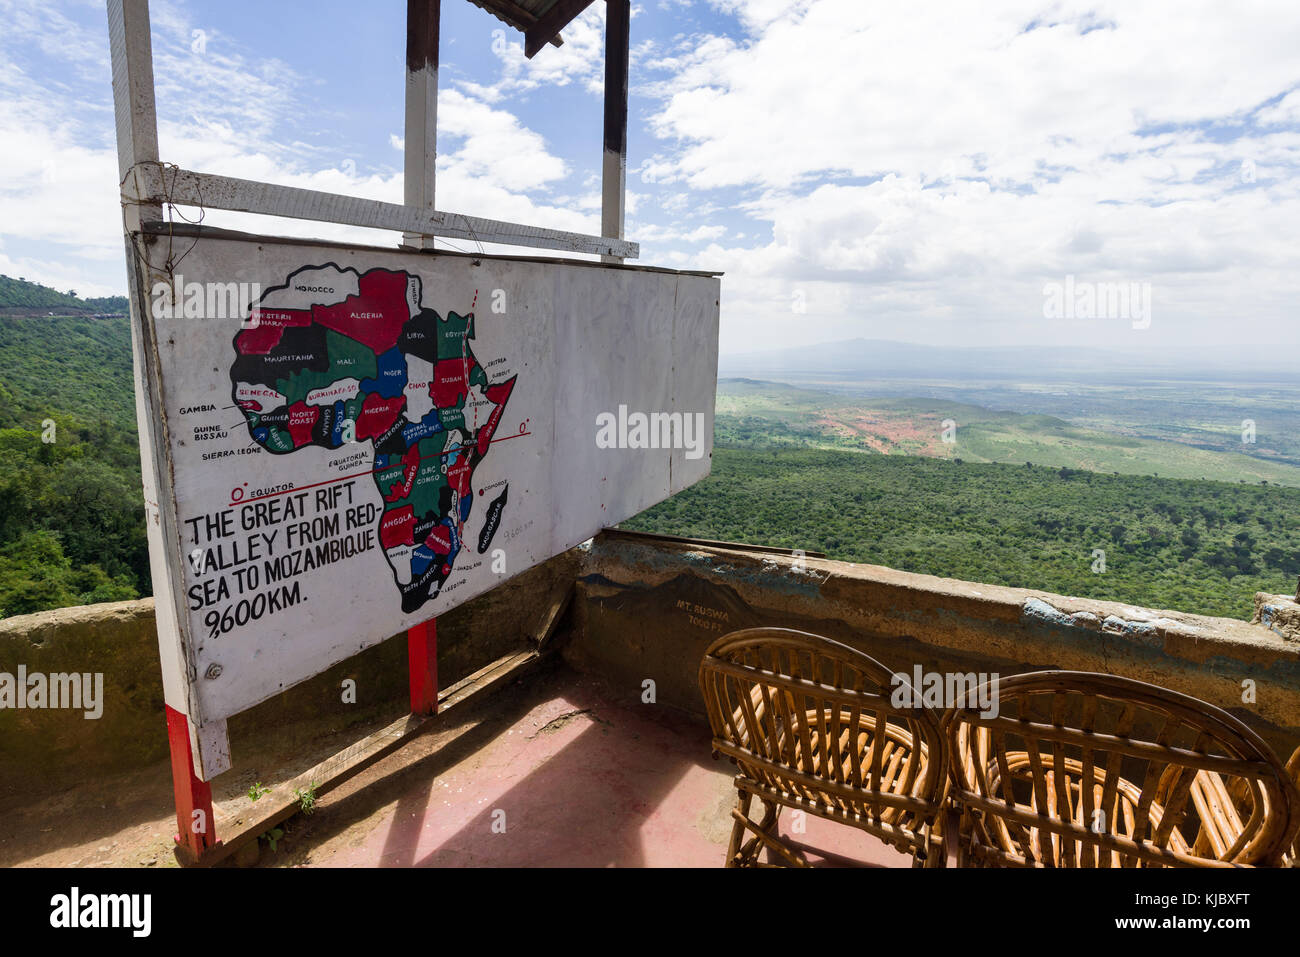 Peint et dessiné à la main carte de l'Afrique montrant les différents pays et comment la vallée du Rift coupe à travers le continent, le Kenya, l'Afrique de l'Est Banque D'Images